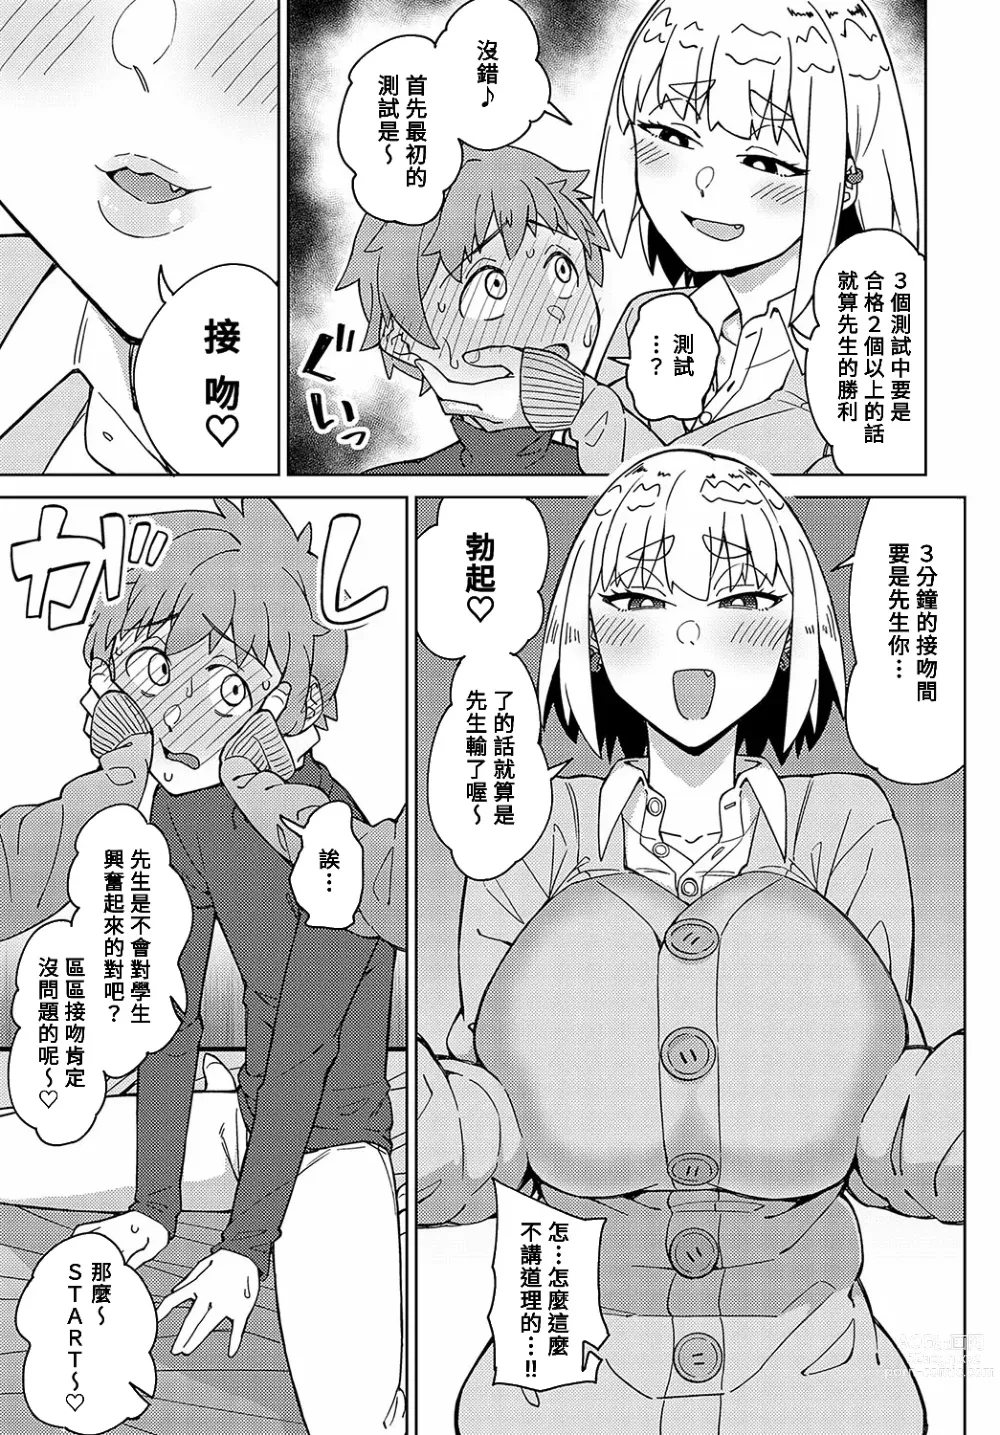 Page 5 of manga Sensei na no ni Makechau no